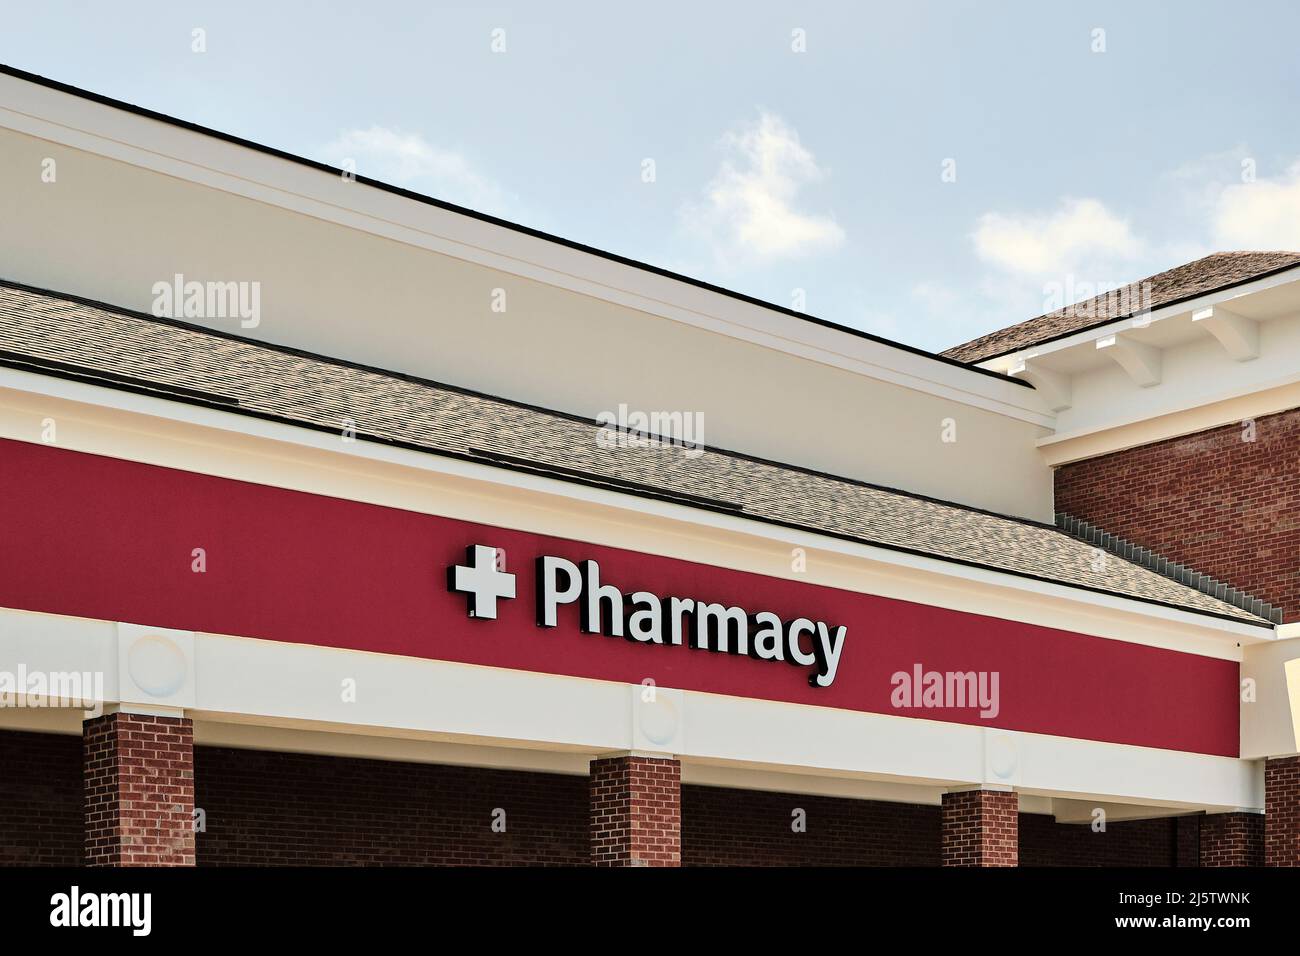 Apotheke Zeichen oder Beschilderung für eine lokale Apotheke oder Drogerie in Montgomery Alabama, USA. Stockfoto